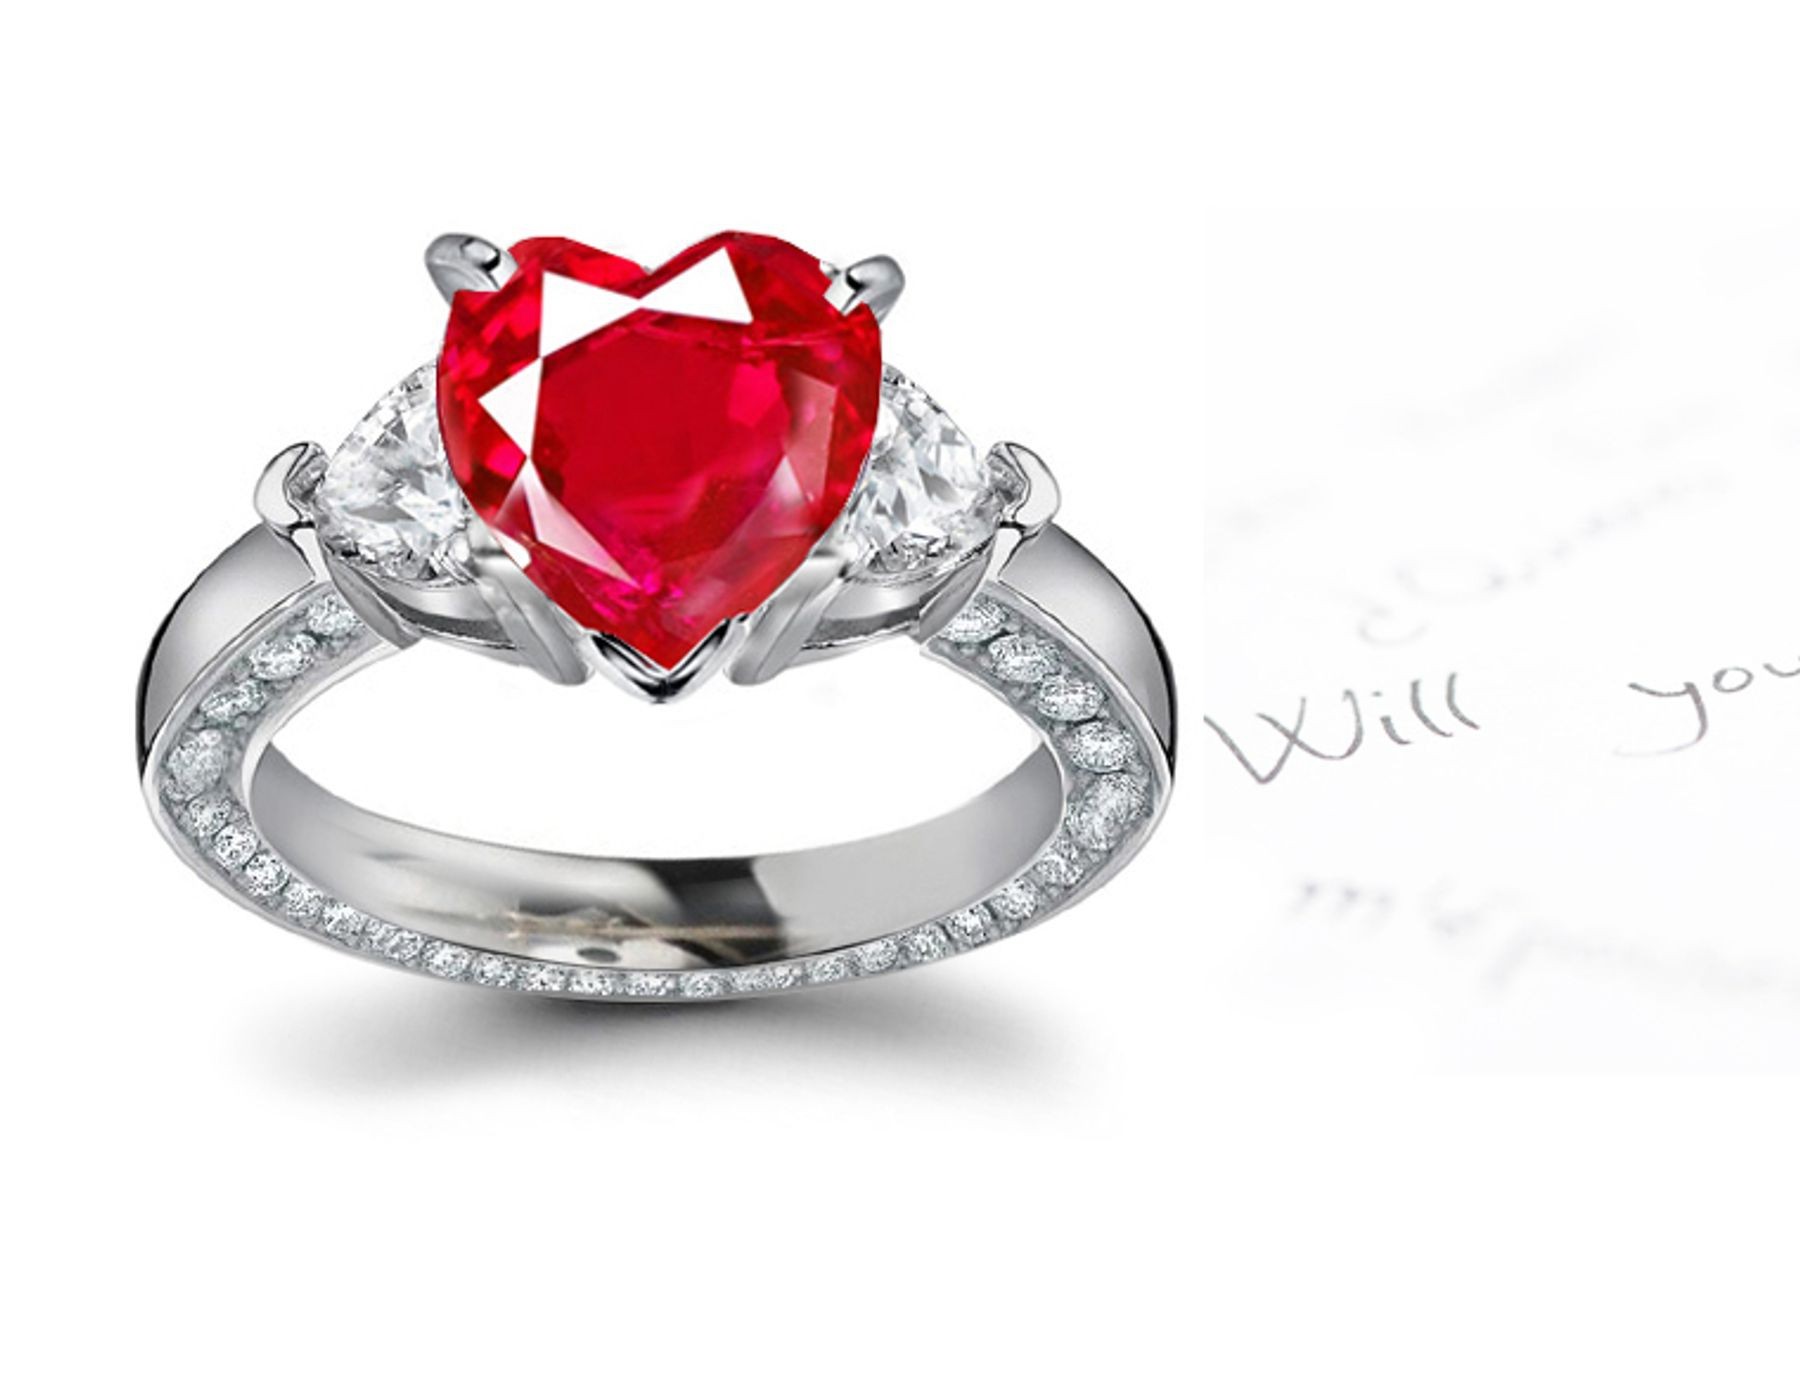 Three Stone Heart Ruby & Heart Diamond Halo Ring in 1.0 to 2.5 carats